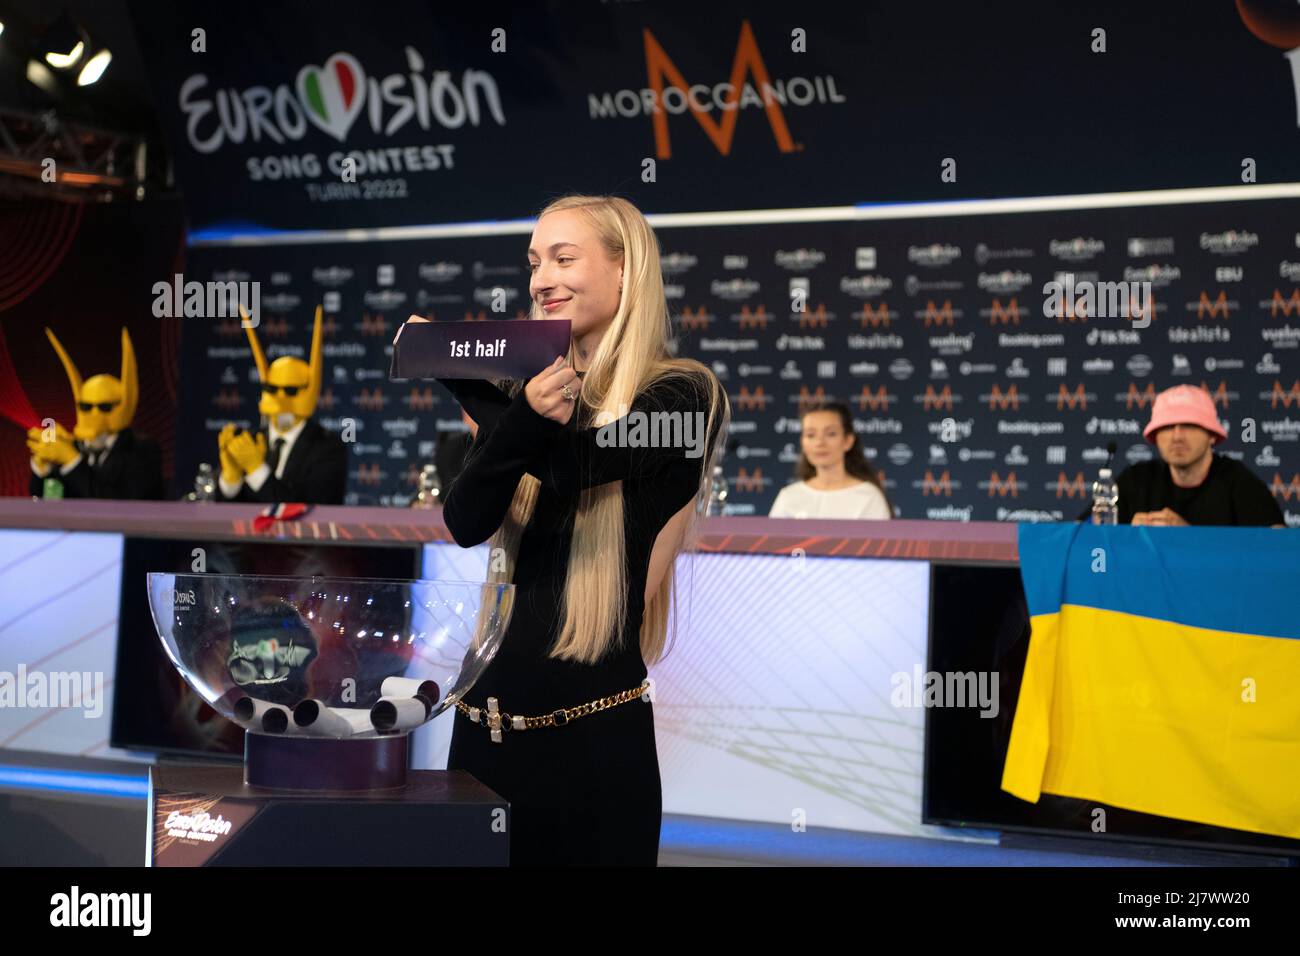 TORINO 20220510 S10 dai Paesi Bassi durante una conferenza stampa dopo la prima semifinale di Eurovisione 2022. Foto: Jessica Gow / TT code 10070 Foto Stock